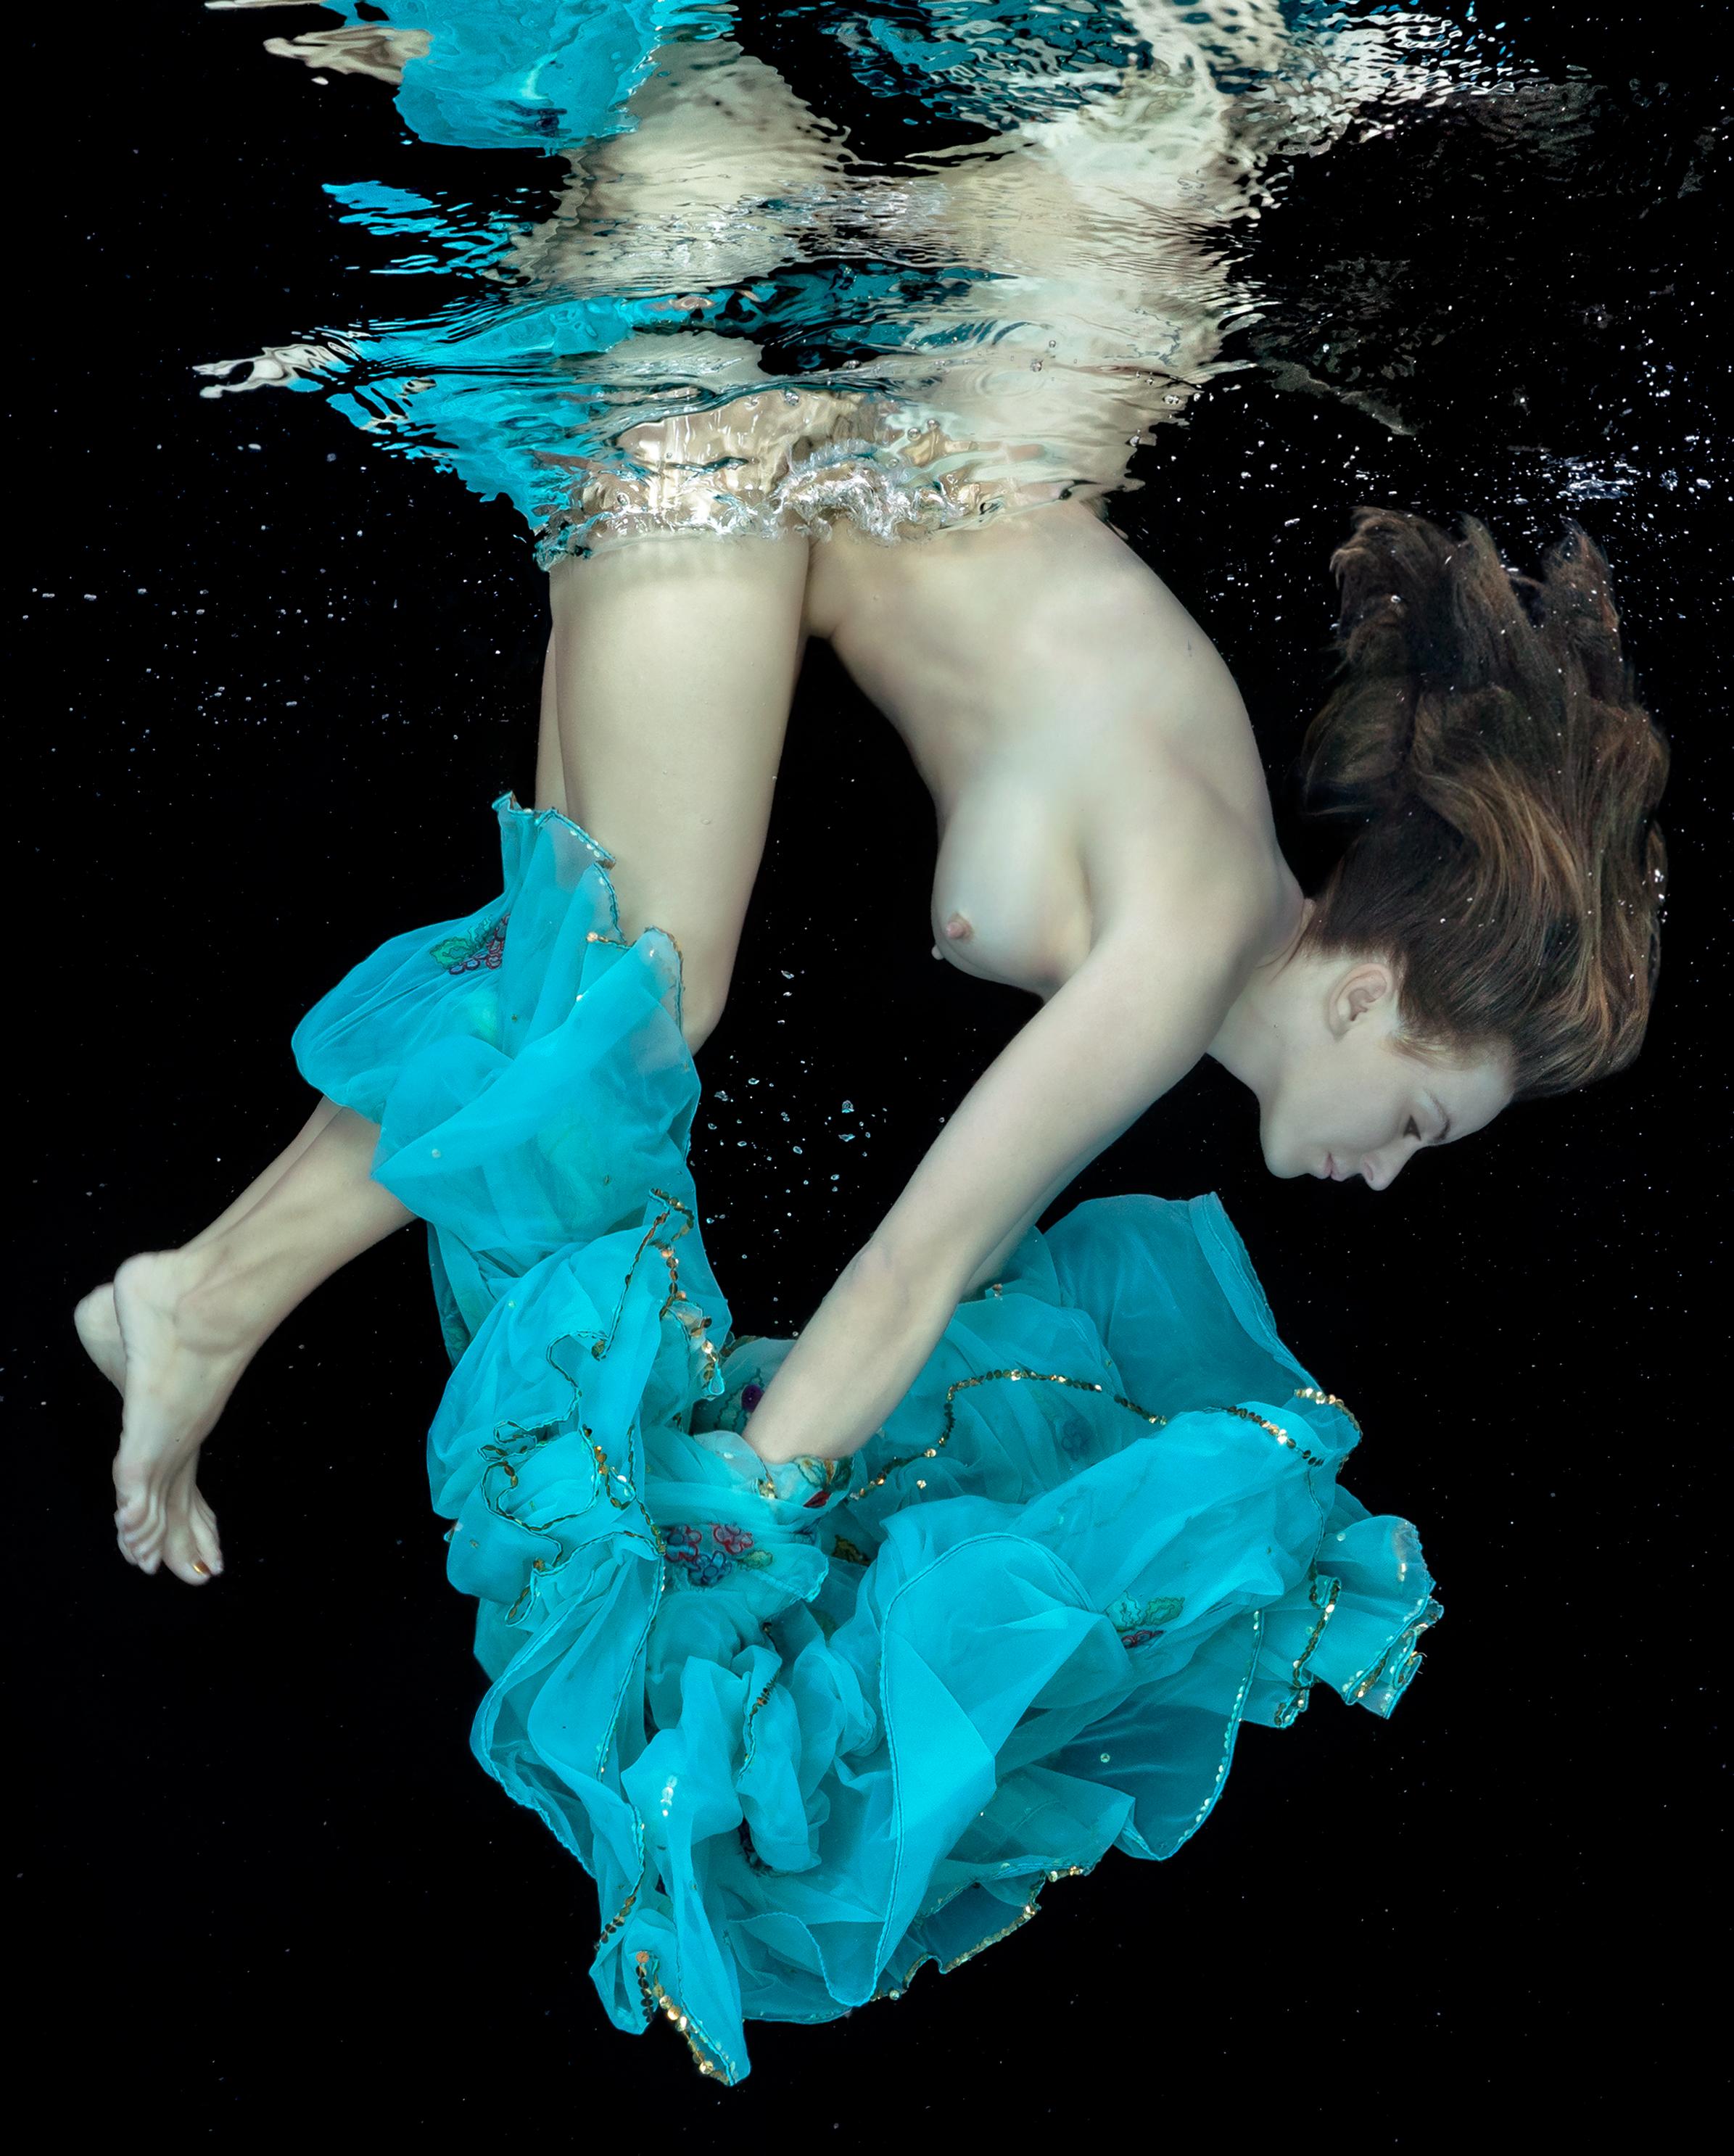 Porcelaine et turquoise - photographie de nu sous-marin - pigment d'archives 24x17